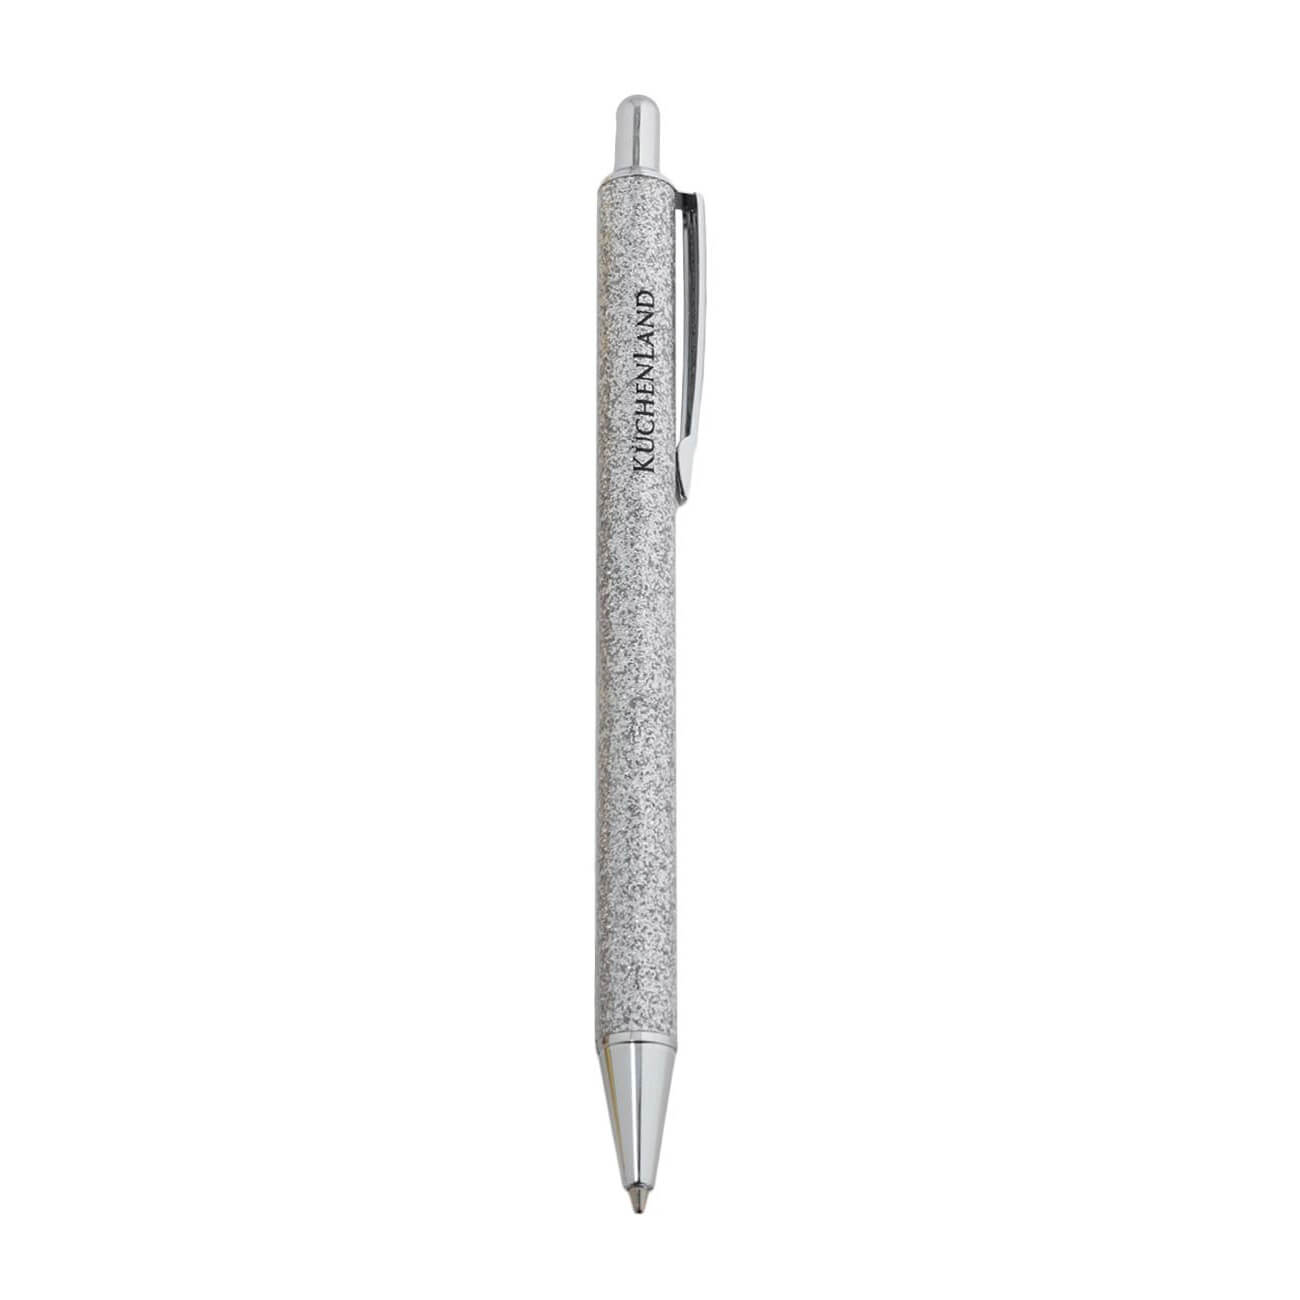 Ручка шариковая, 14 см, сталь, серебристая, с блестками, Draw sparkle изображение № 1